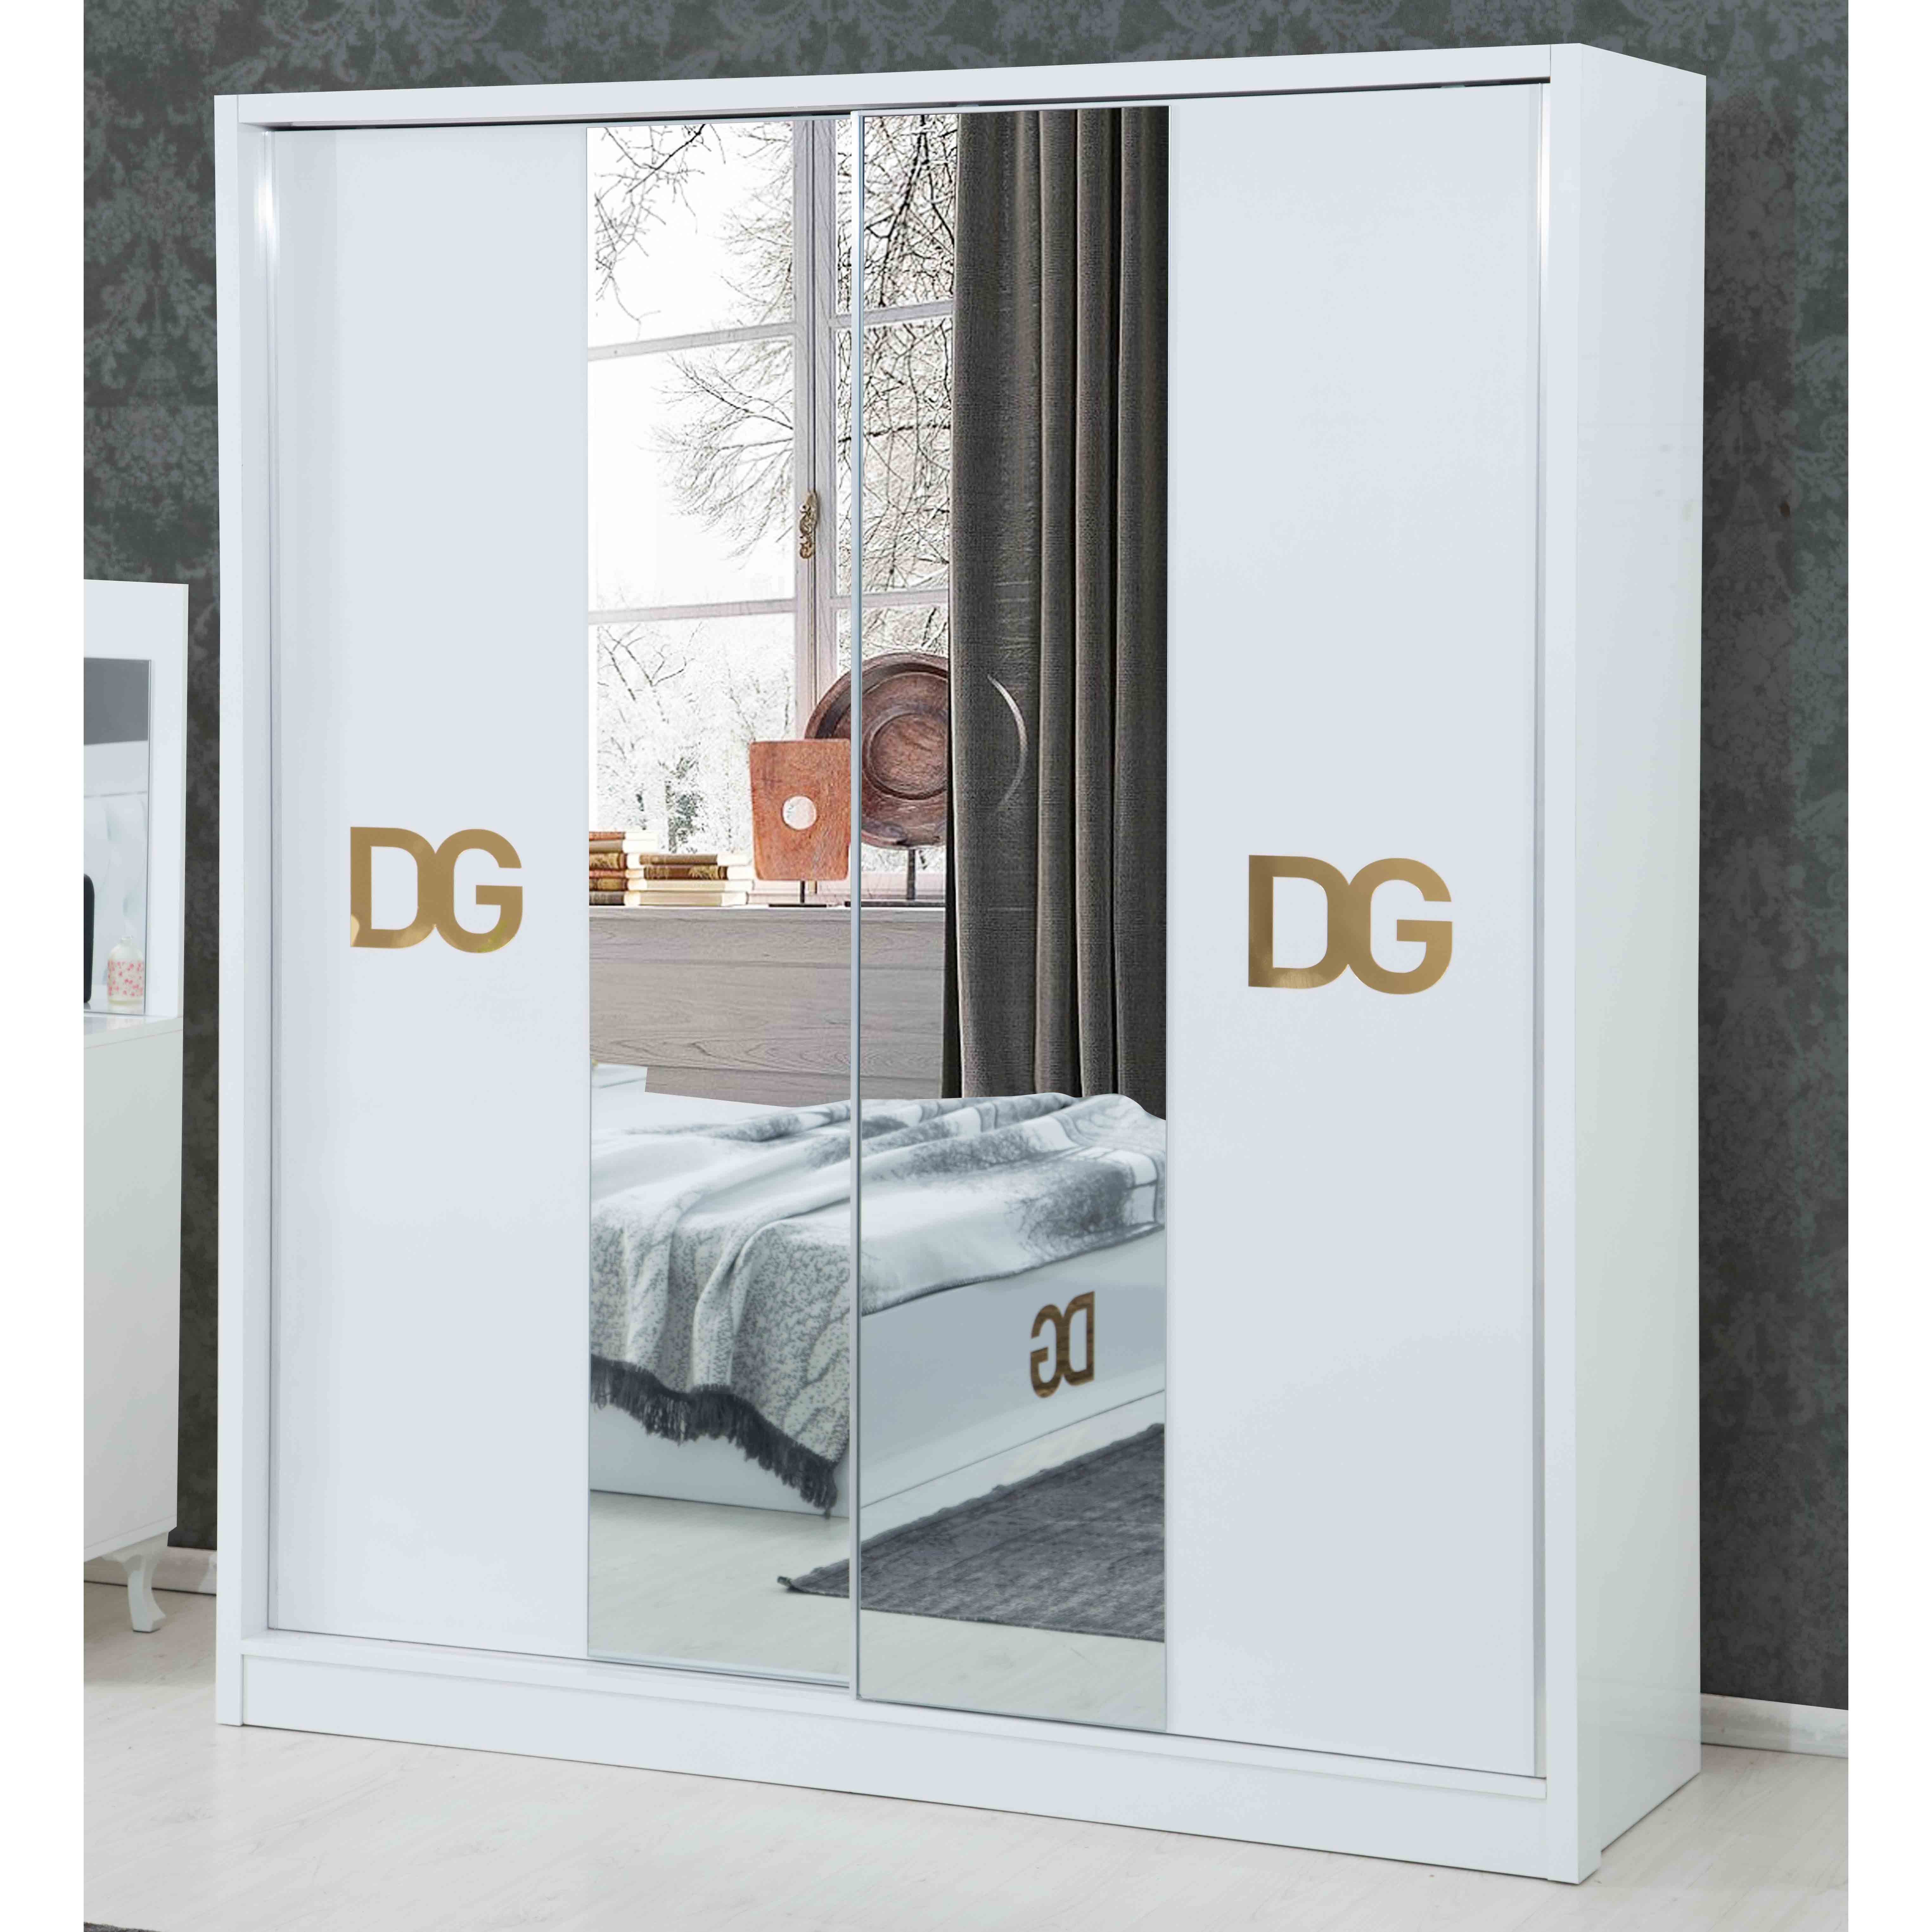 Dg Vol1 Bedroom With 180 cm Wardrobe